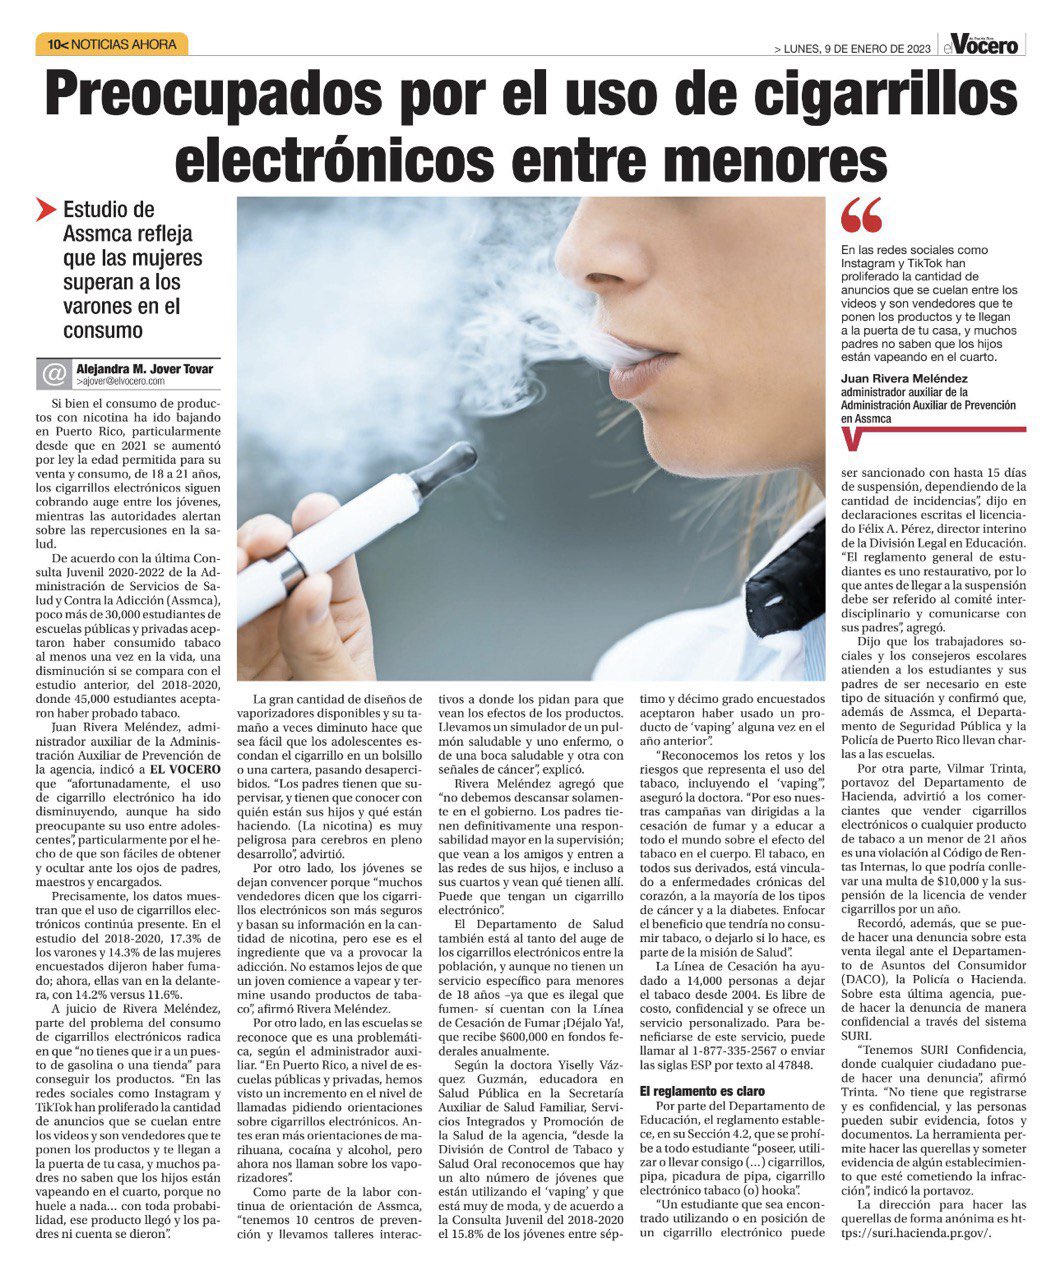 EE.UU. aprueba cigarros electrónicos para dejar de fumar – Artículo 66